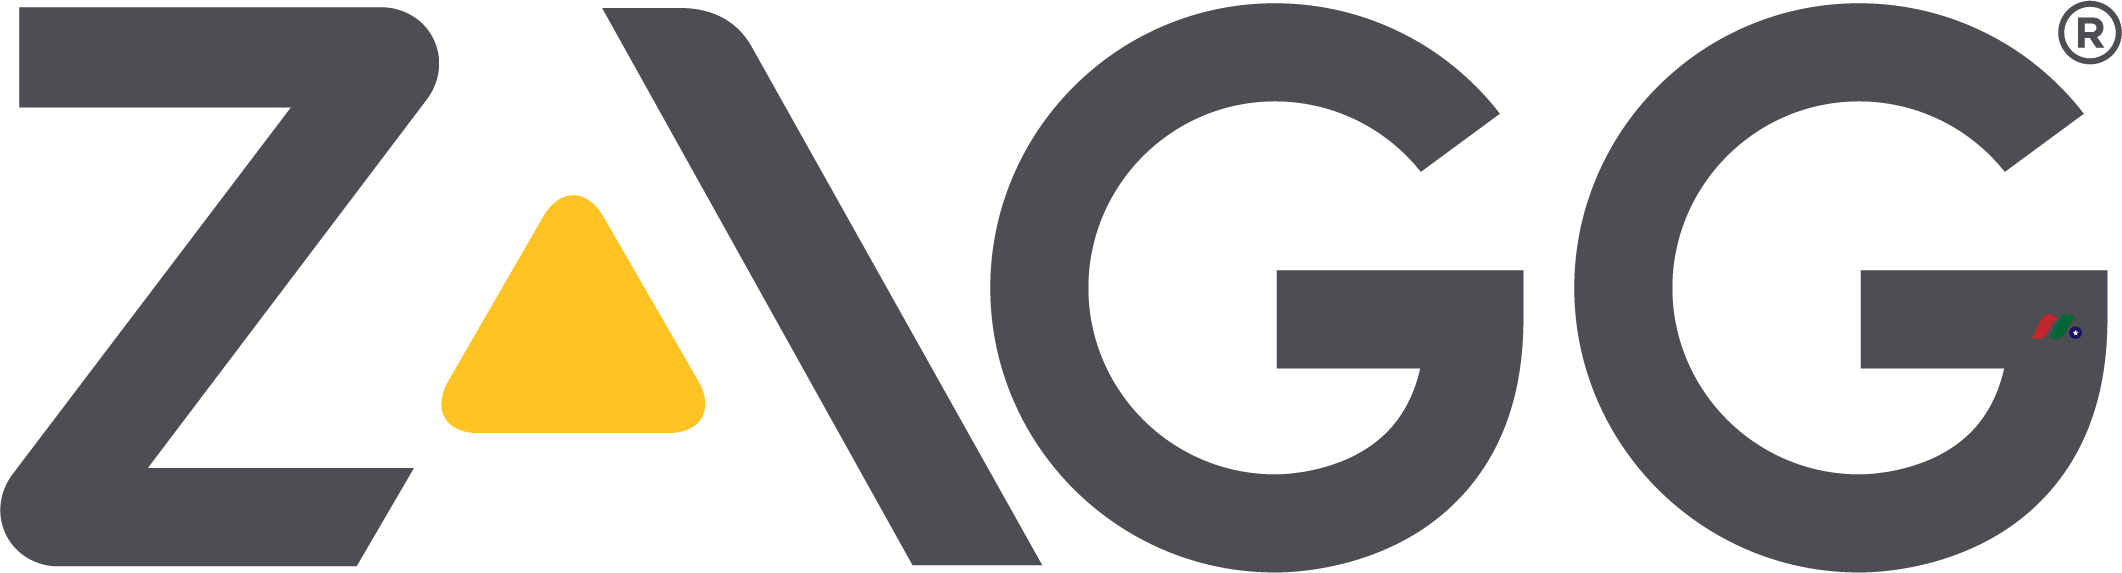 ZAGG Inc Logo